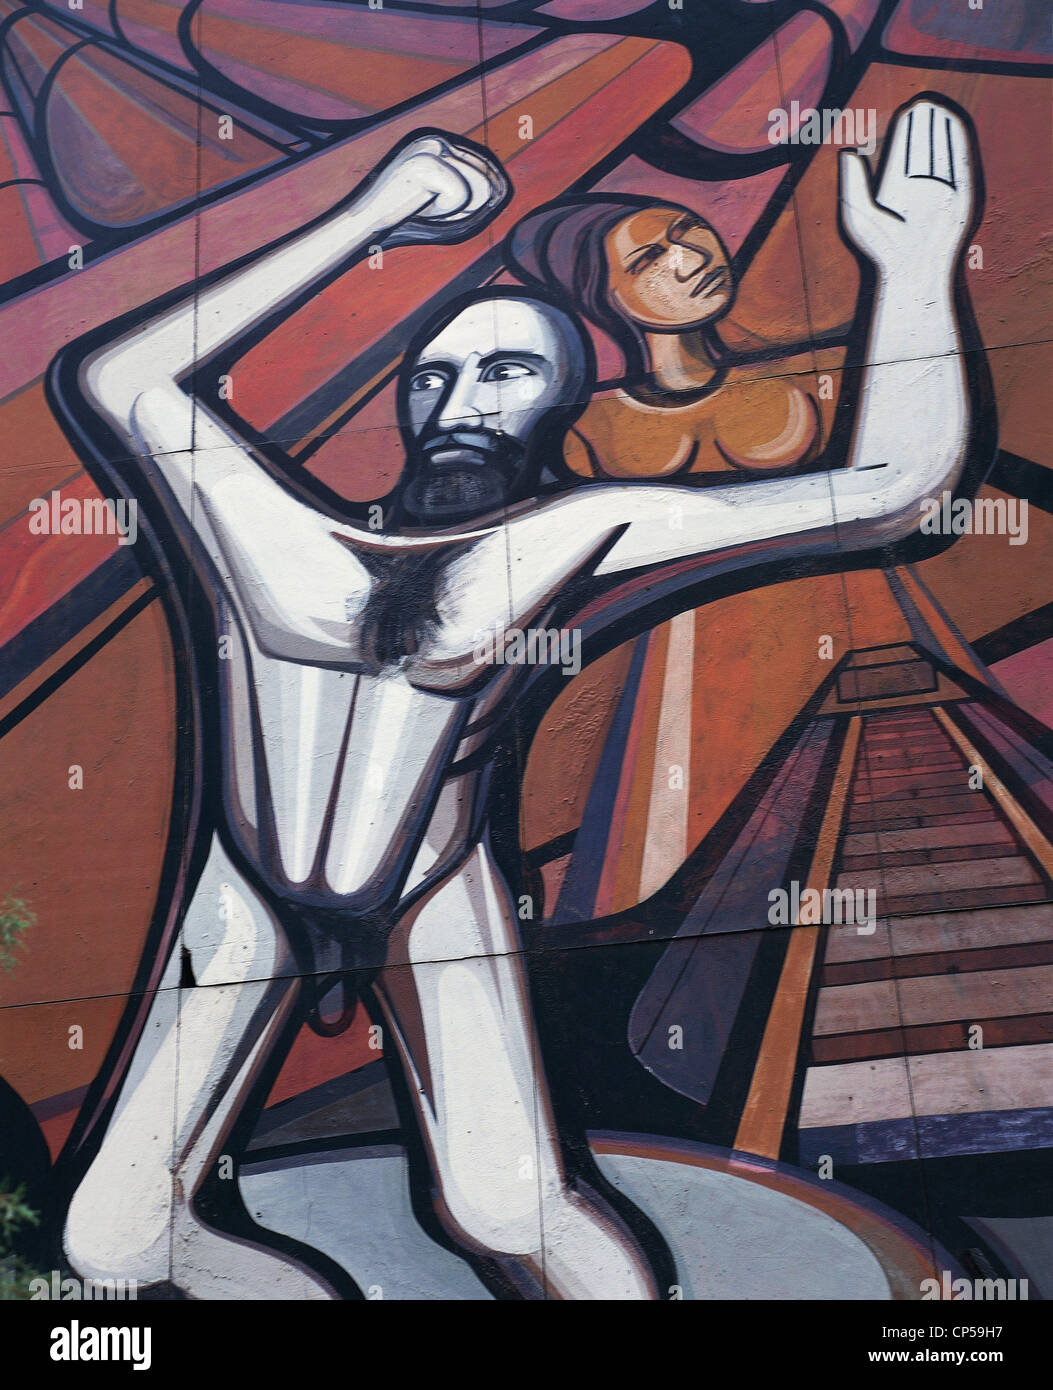 Mexico - Mexico City, Poliforum Cultural Siqueiros. David Alfaro Siqueiros (1898-1974), Marcia humanity. Mural, detail. Stock Photo